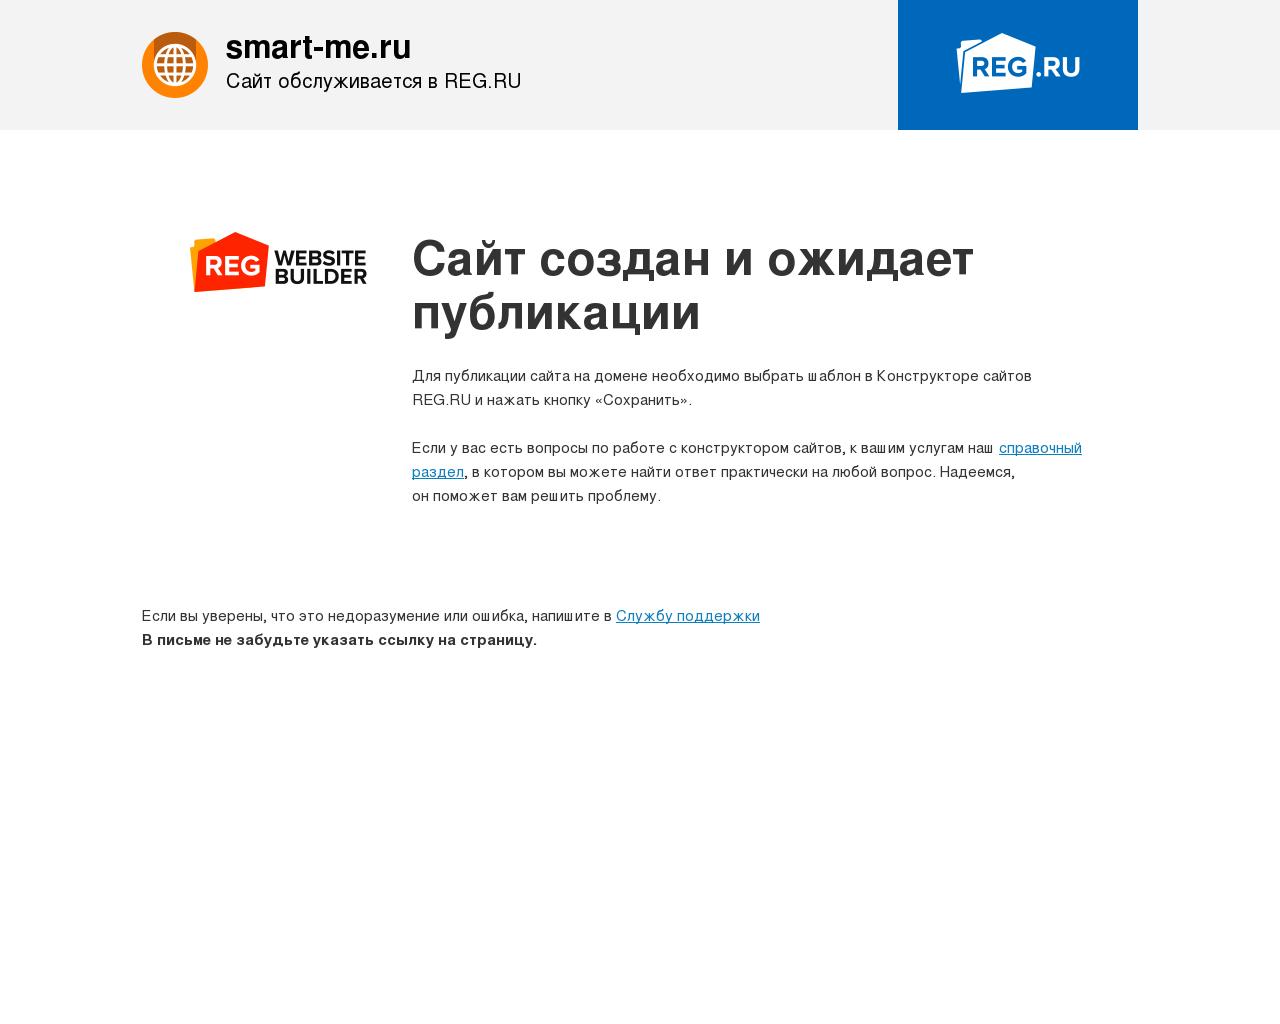 Изображение сайта smart-me.ru в разрешении 1280x1024